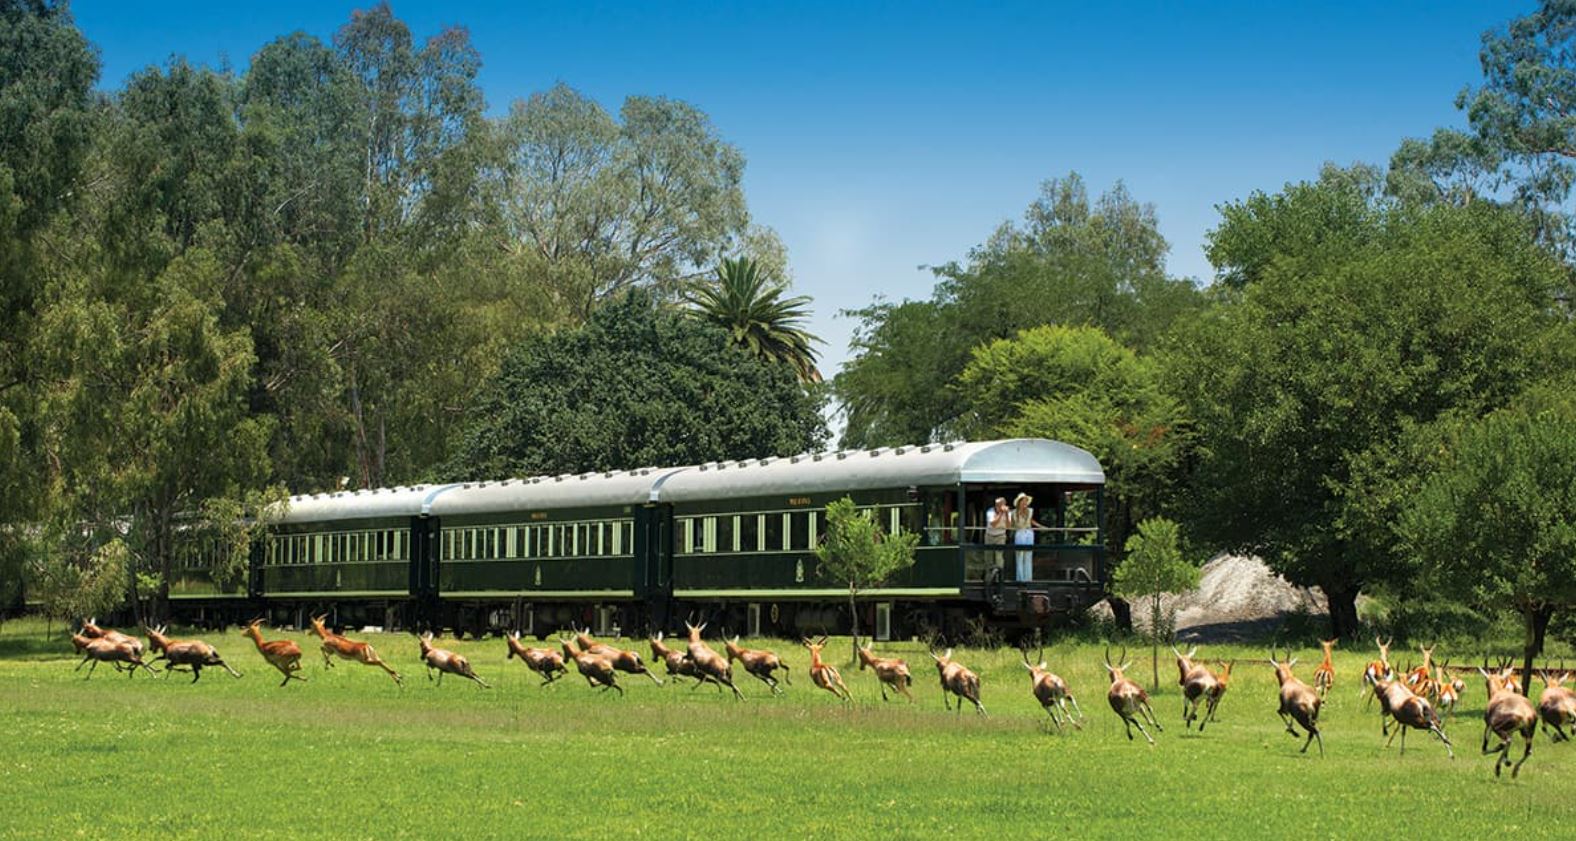 Südafrika Reisearten Zugreisen mit Rovos Rail mit Springböcken im Vordergrund auf grüner Wiese und Zug mit Passagieren im hintersten Wagon die Natur und Tiere beobachtend bei blauem Himmel